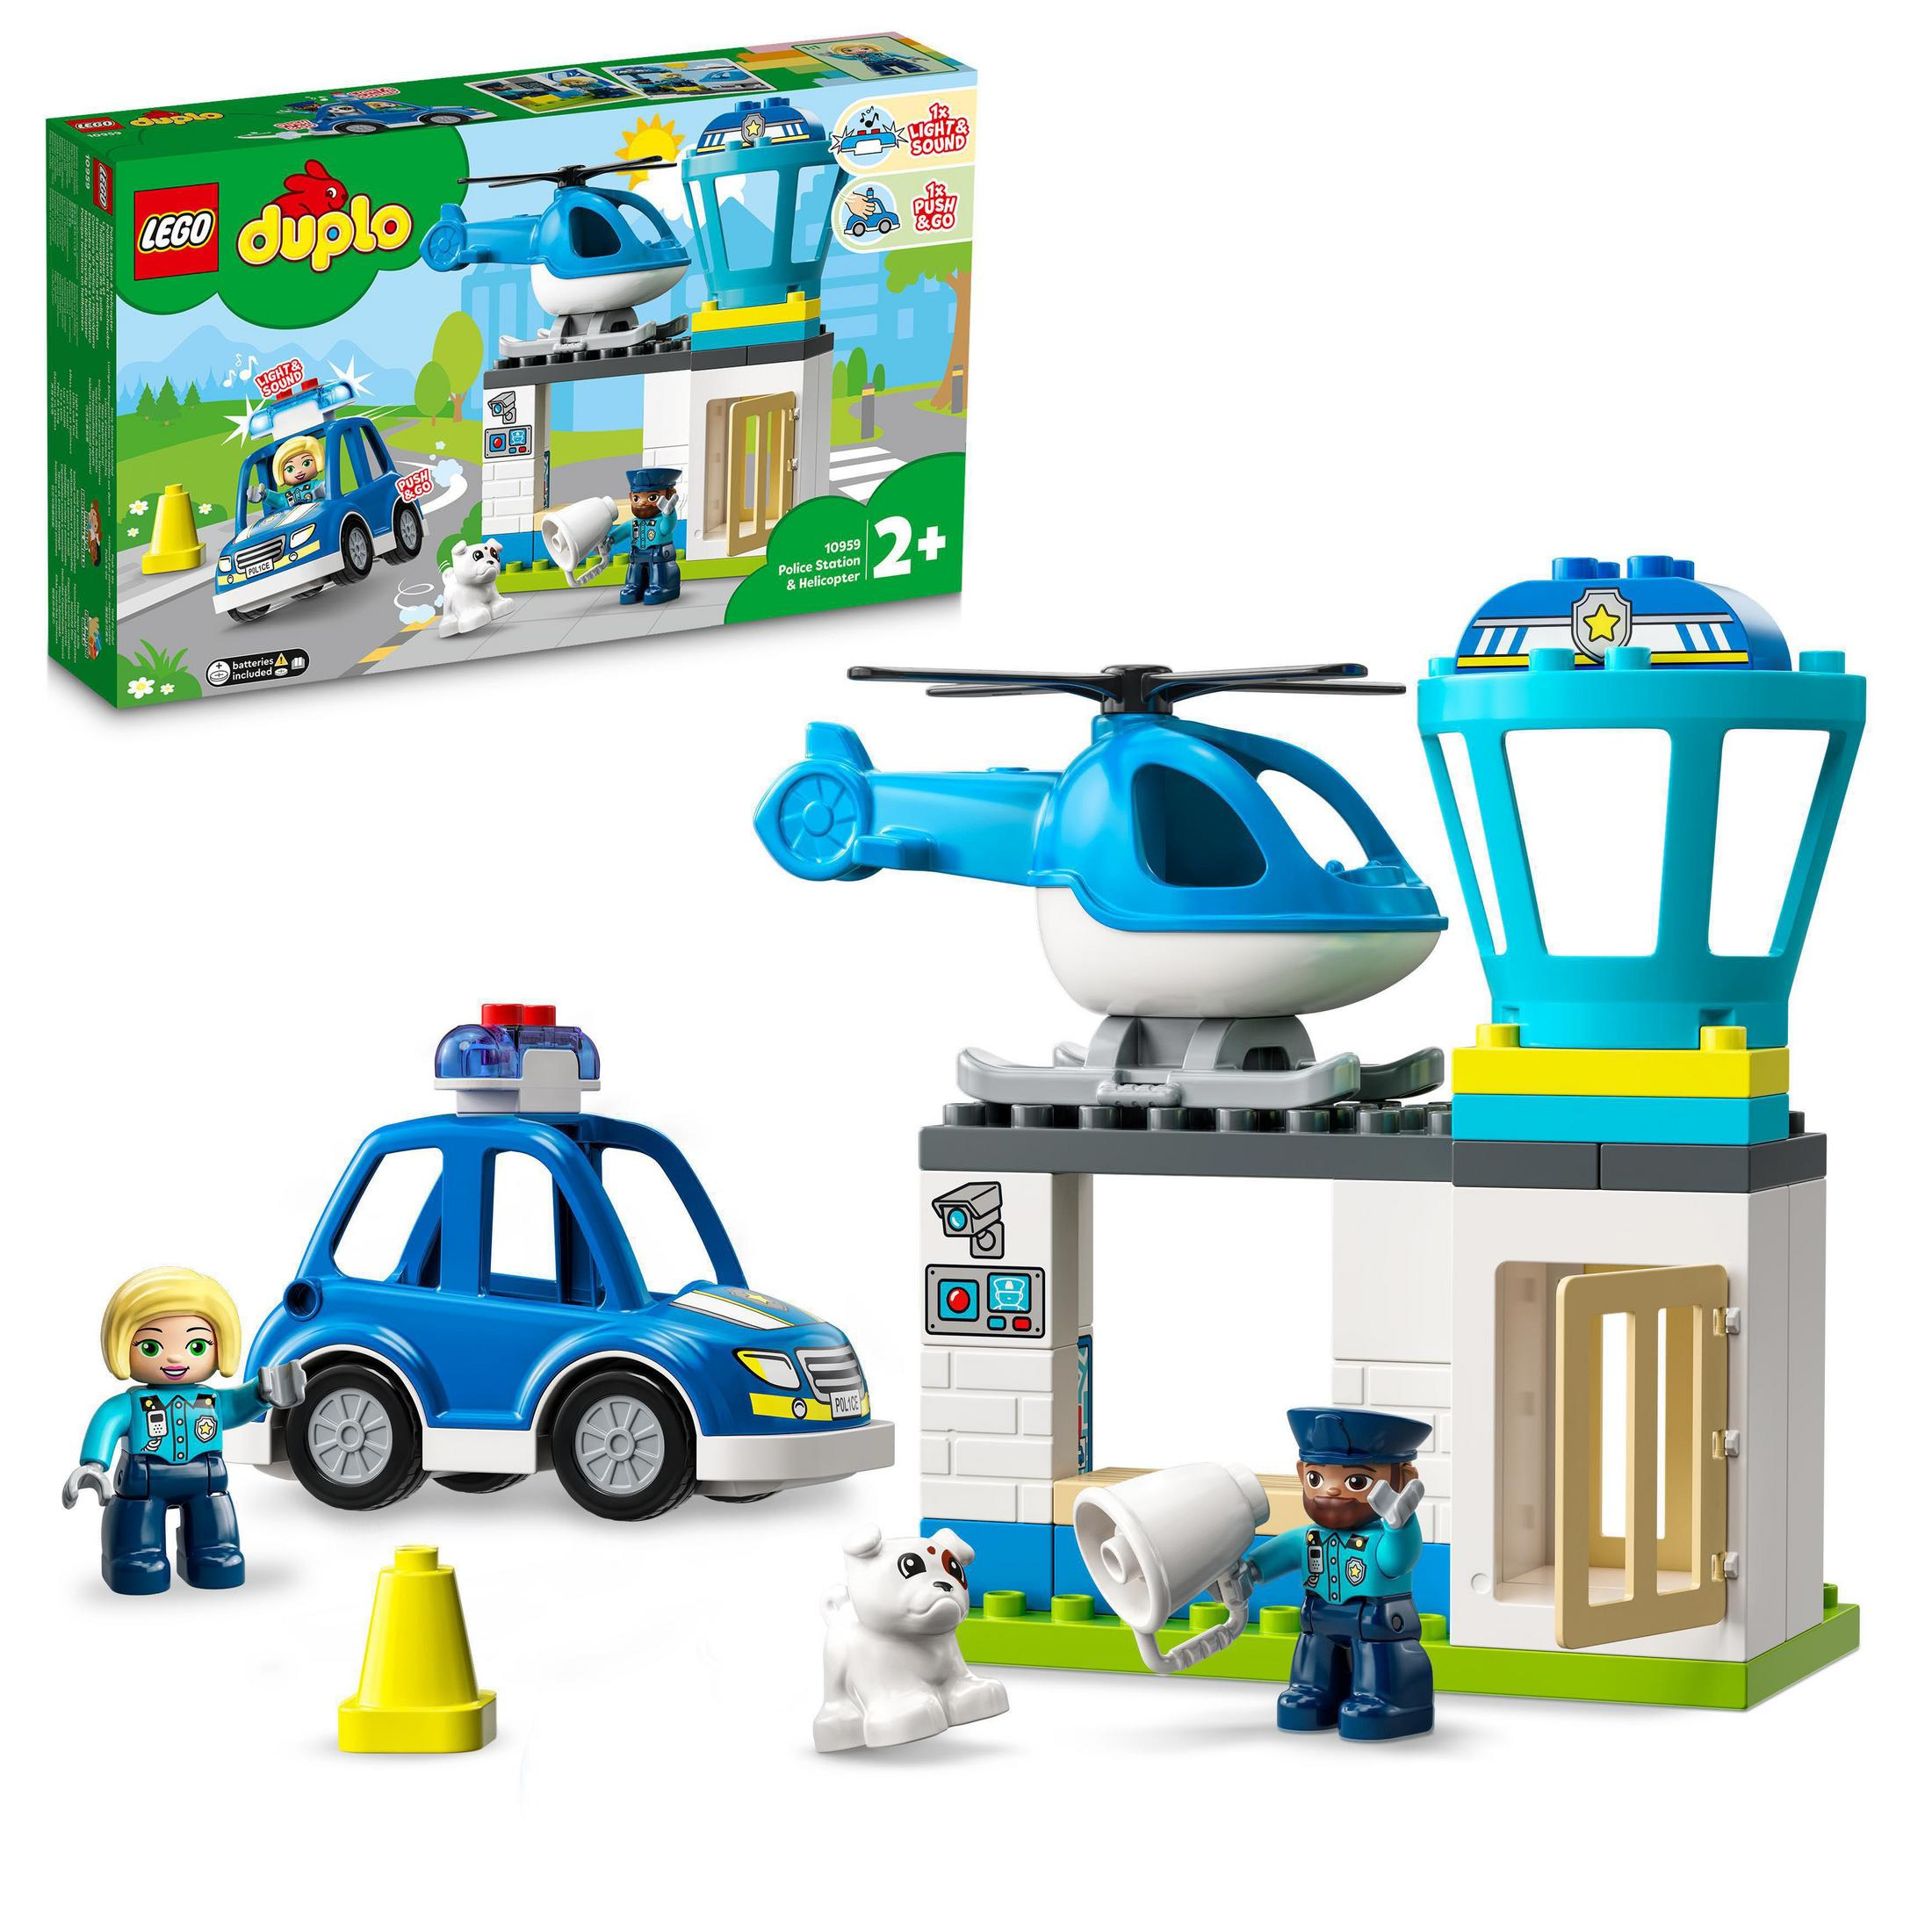 LEGO 10959 Duplo Polizeistation Keine Lego, Hubschrauber Mit Angabe